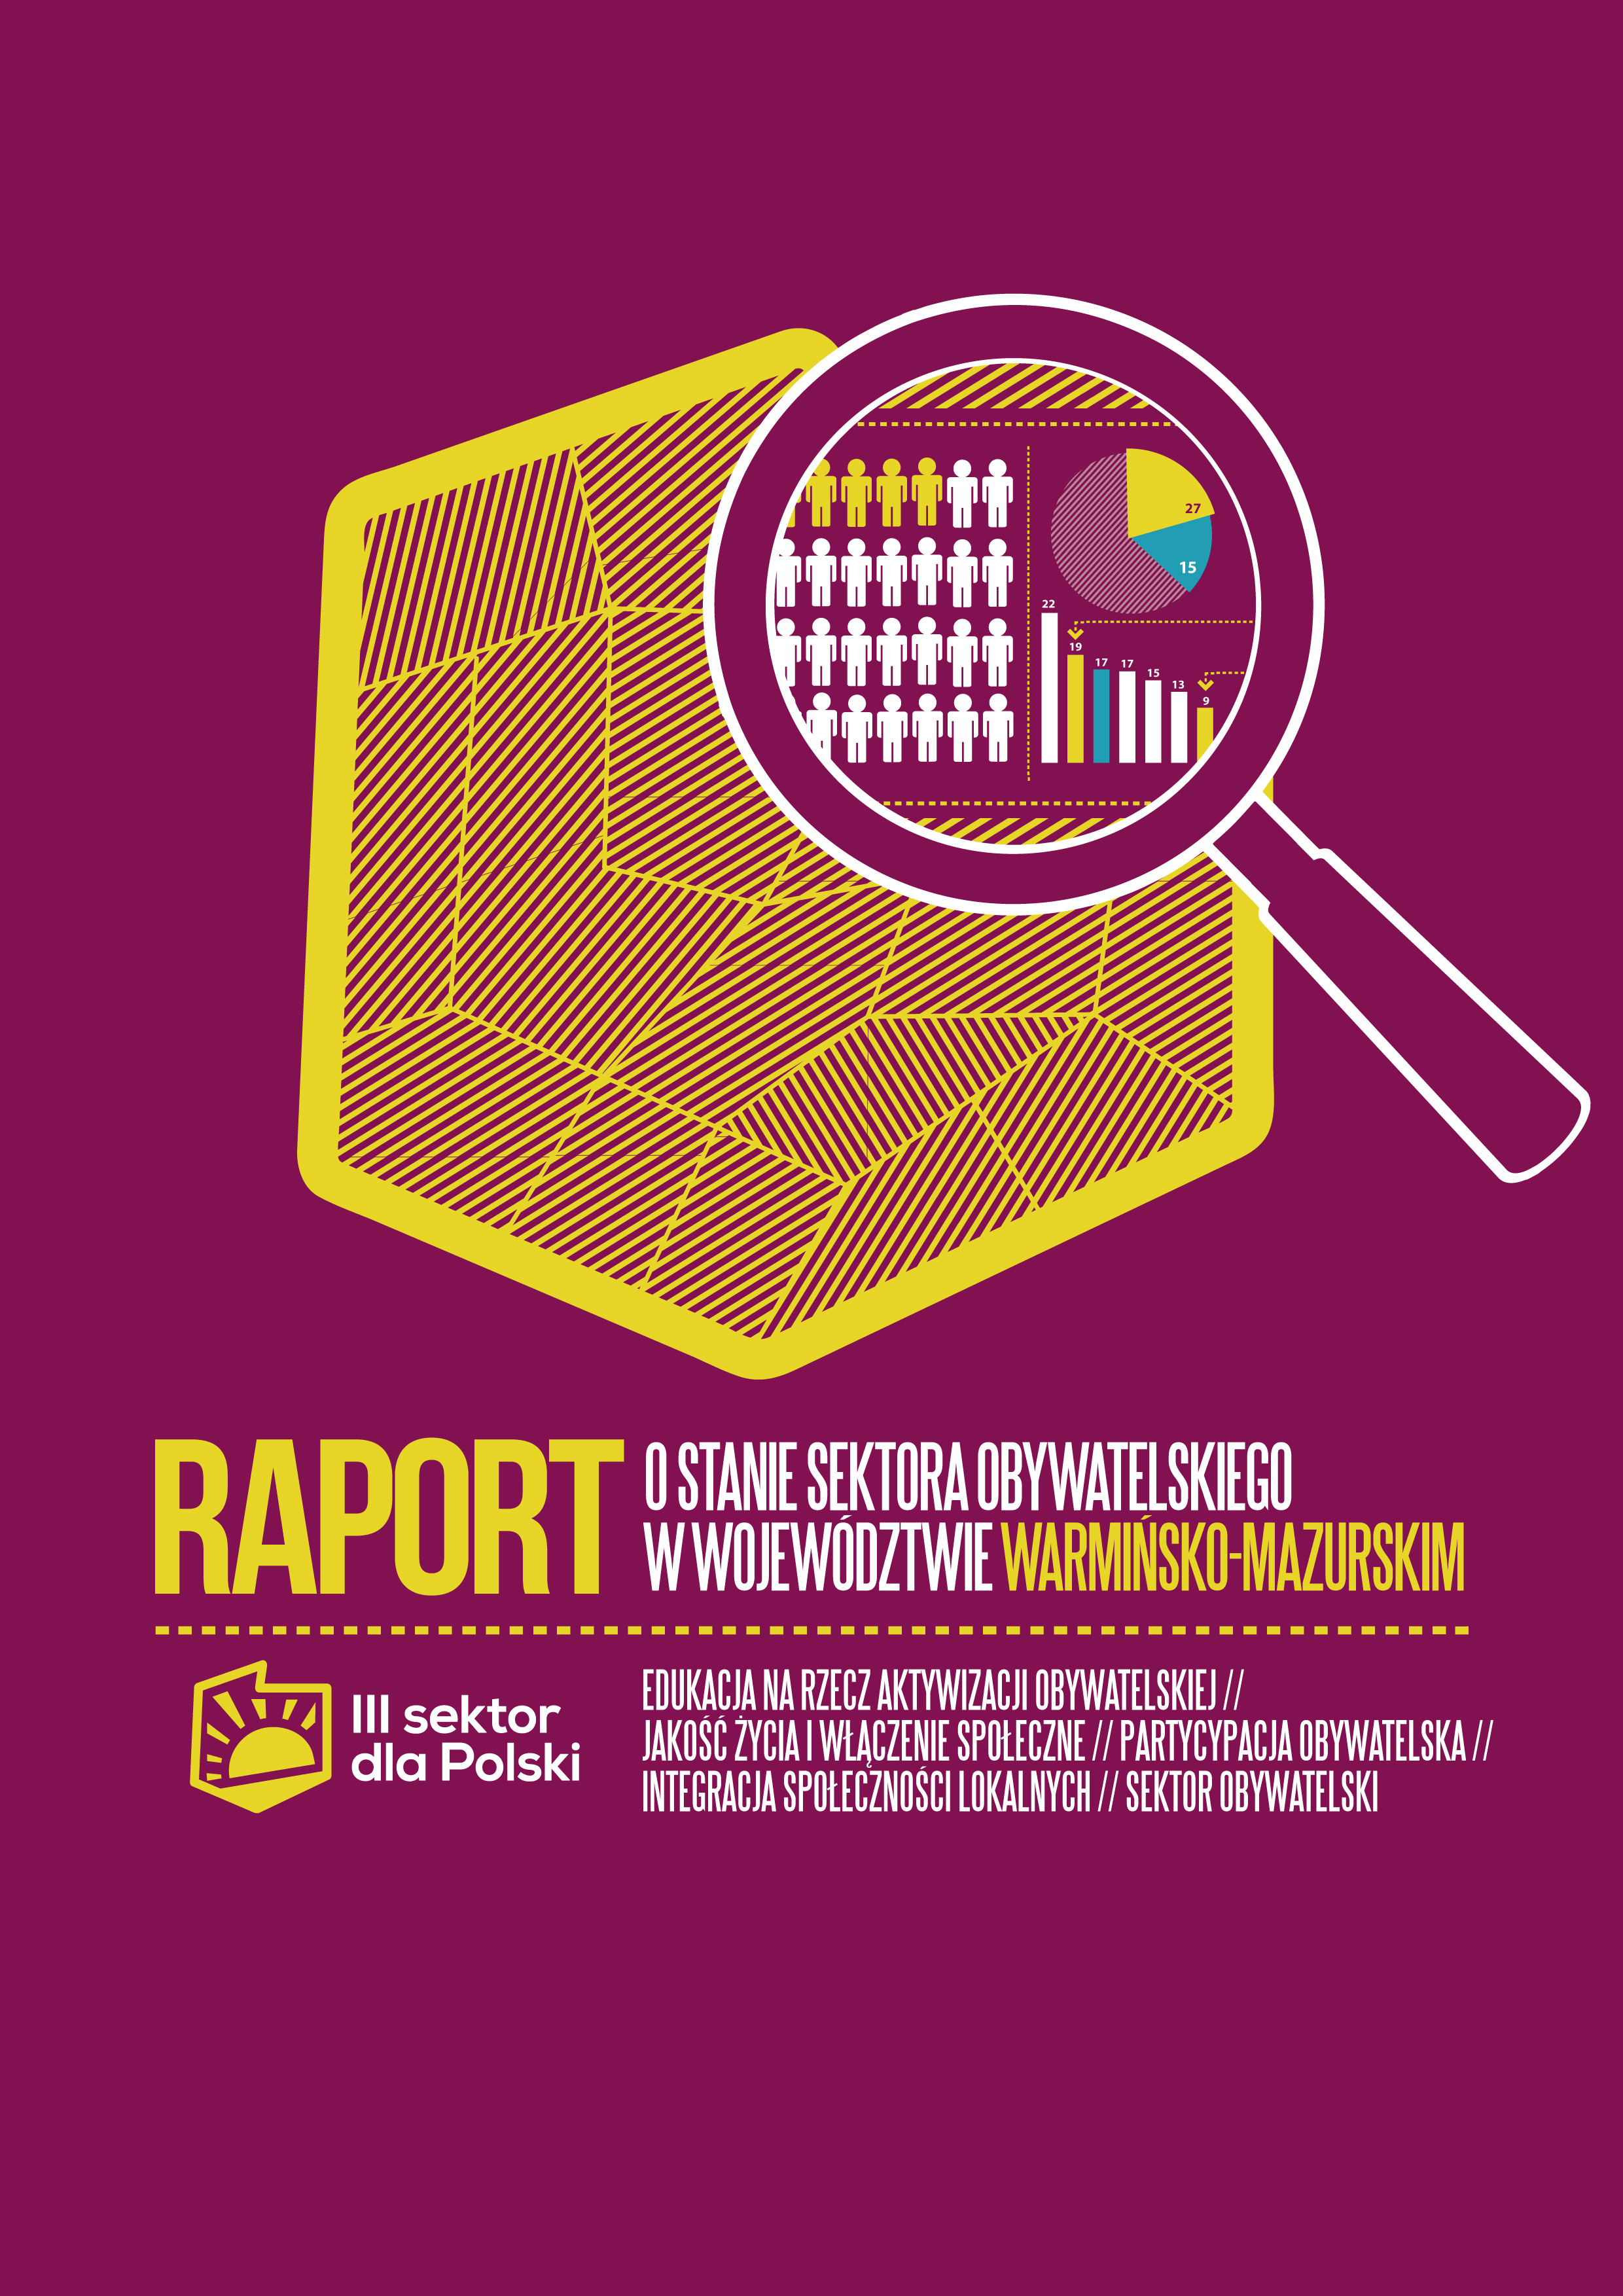 Raport - Badanie stanu sektora obywatelskiego  w województwie warmińsko-mazurskim w kontekście Strategicznej Mapy Drogowej Rozwoju Sektora Obywatelskiego w Polsce